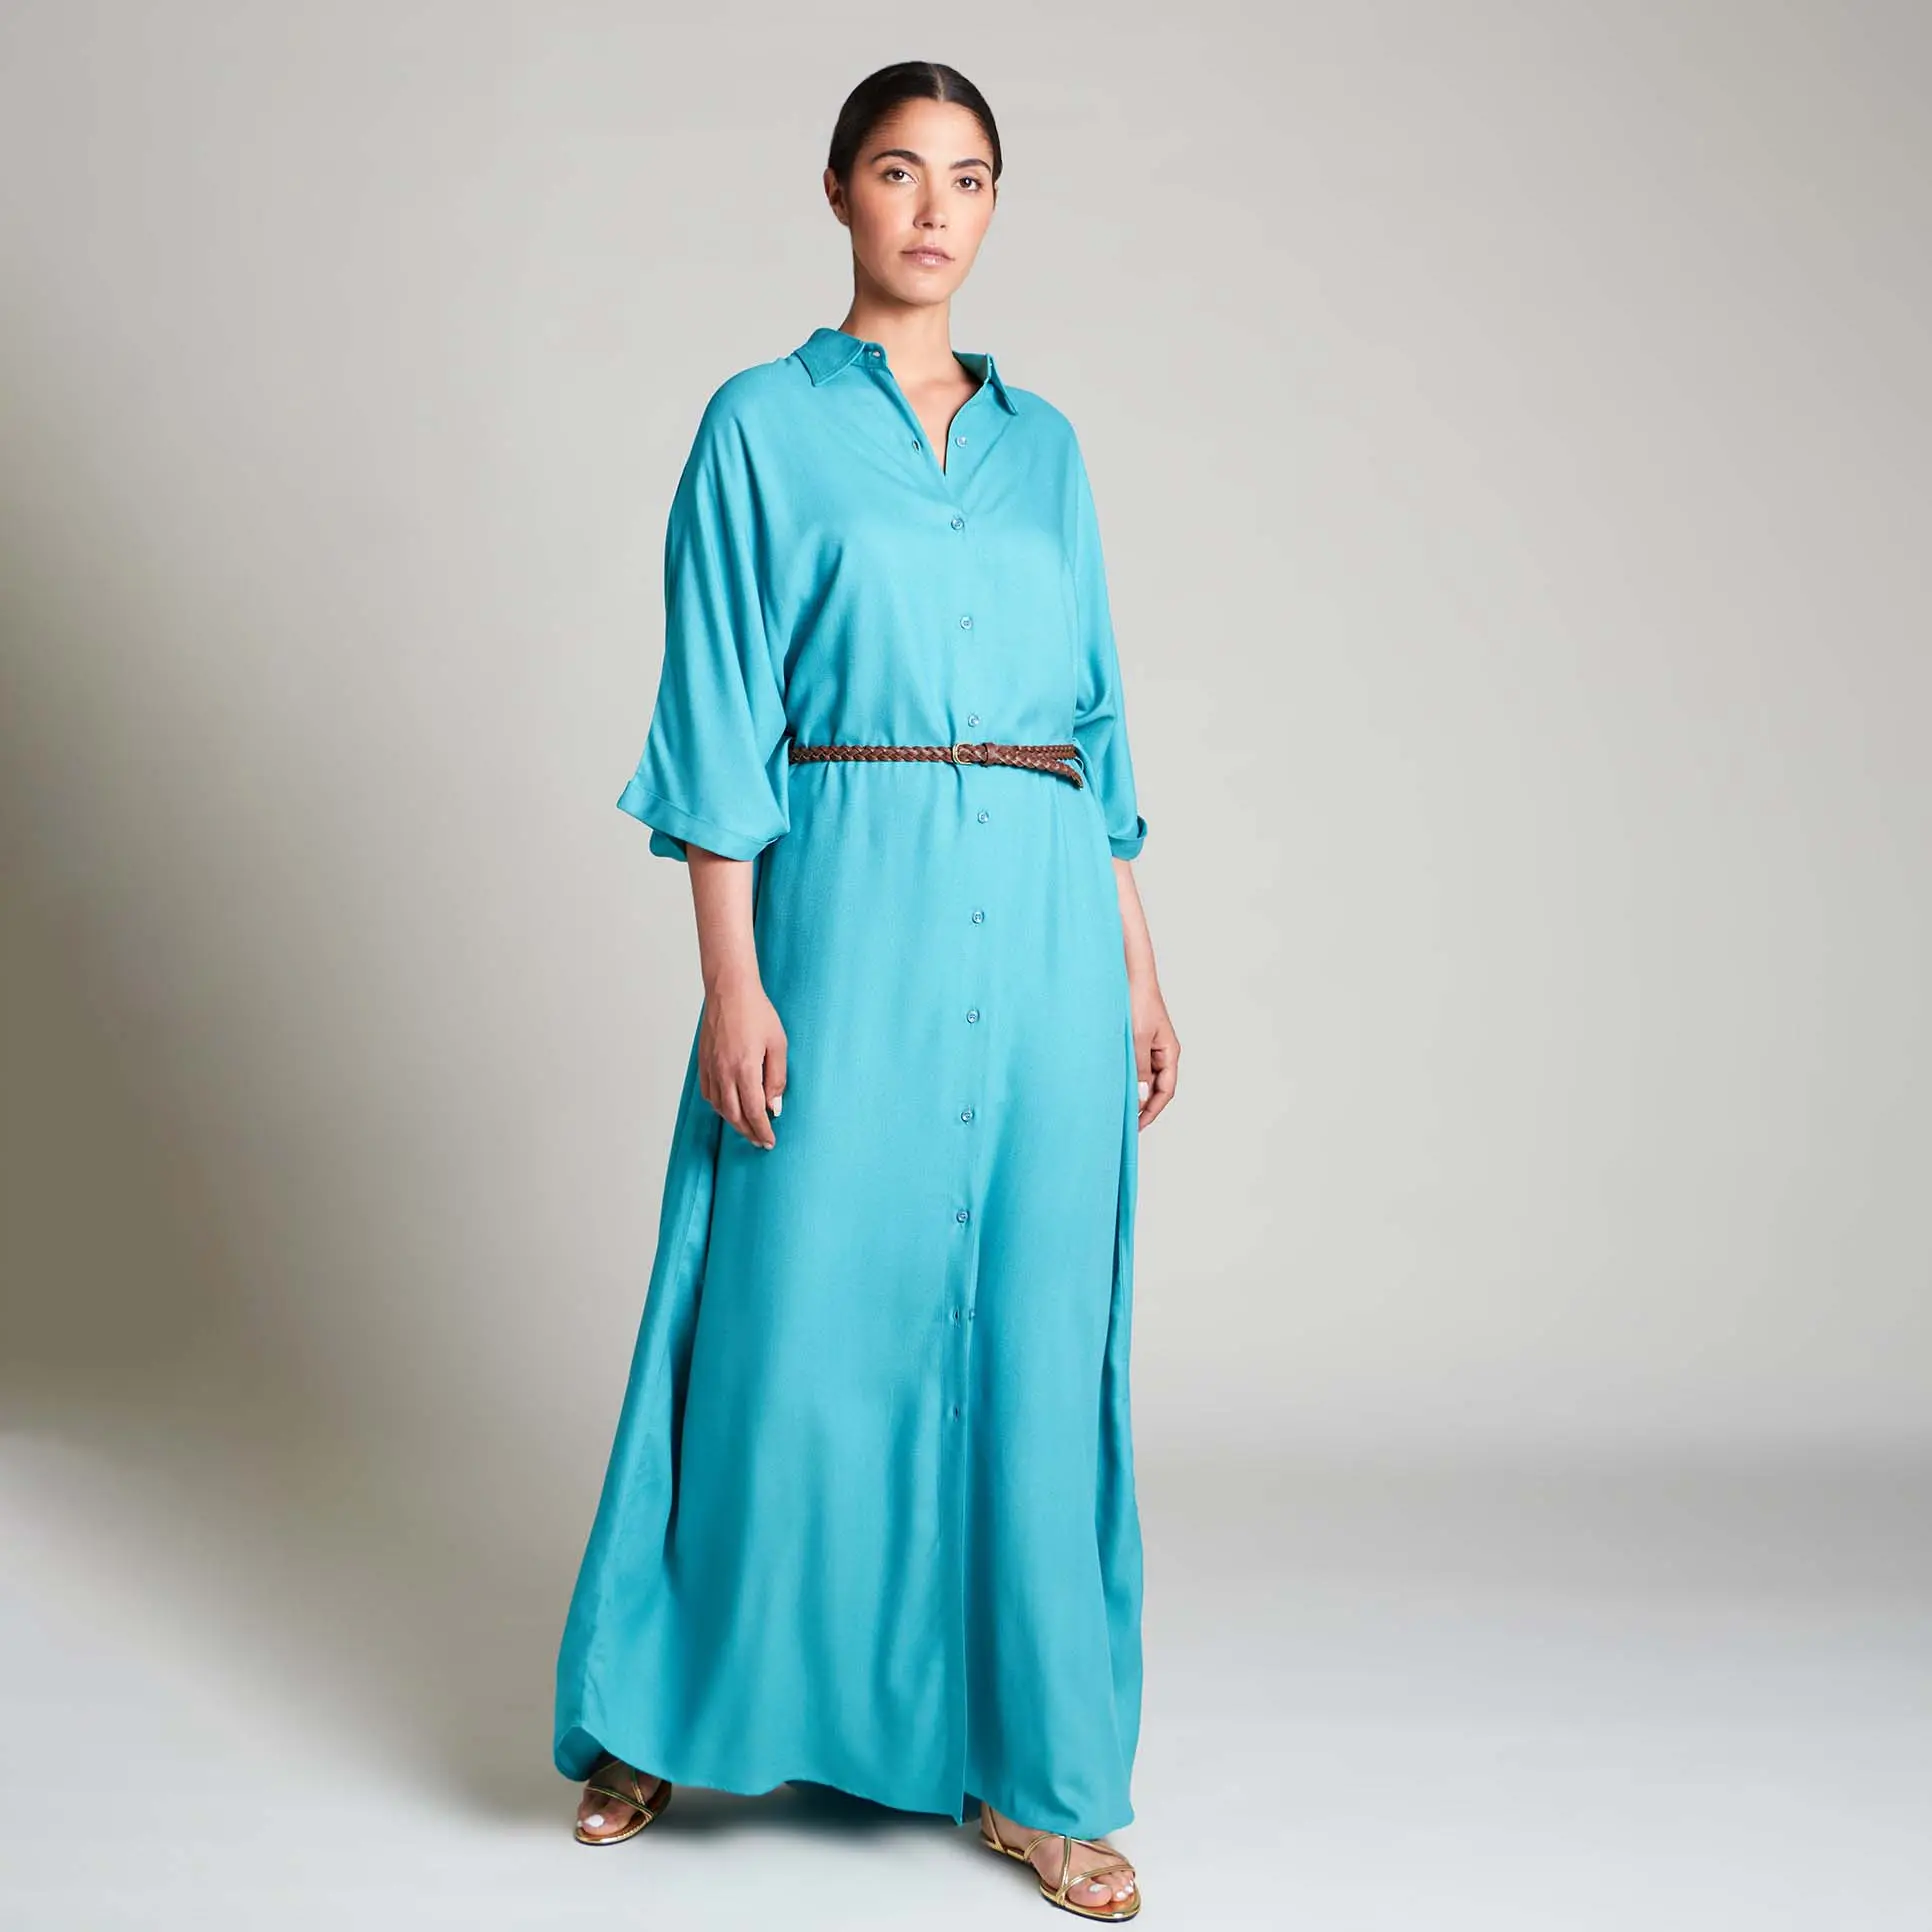 Aschulman 사용자 정의 이슬람 옷 블루 버튼 다운 롱 셔츠 드레스 플러스 사이즈 여성용 카프탄